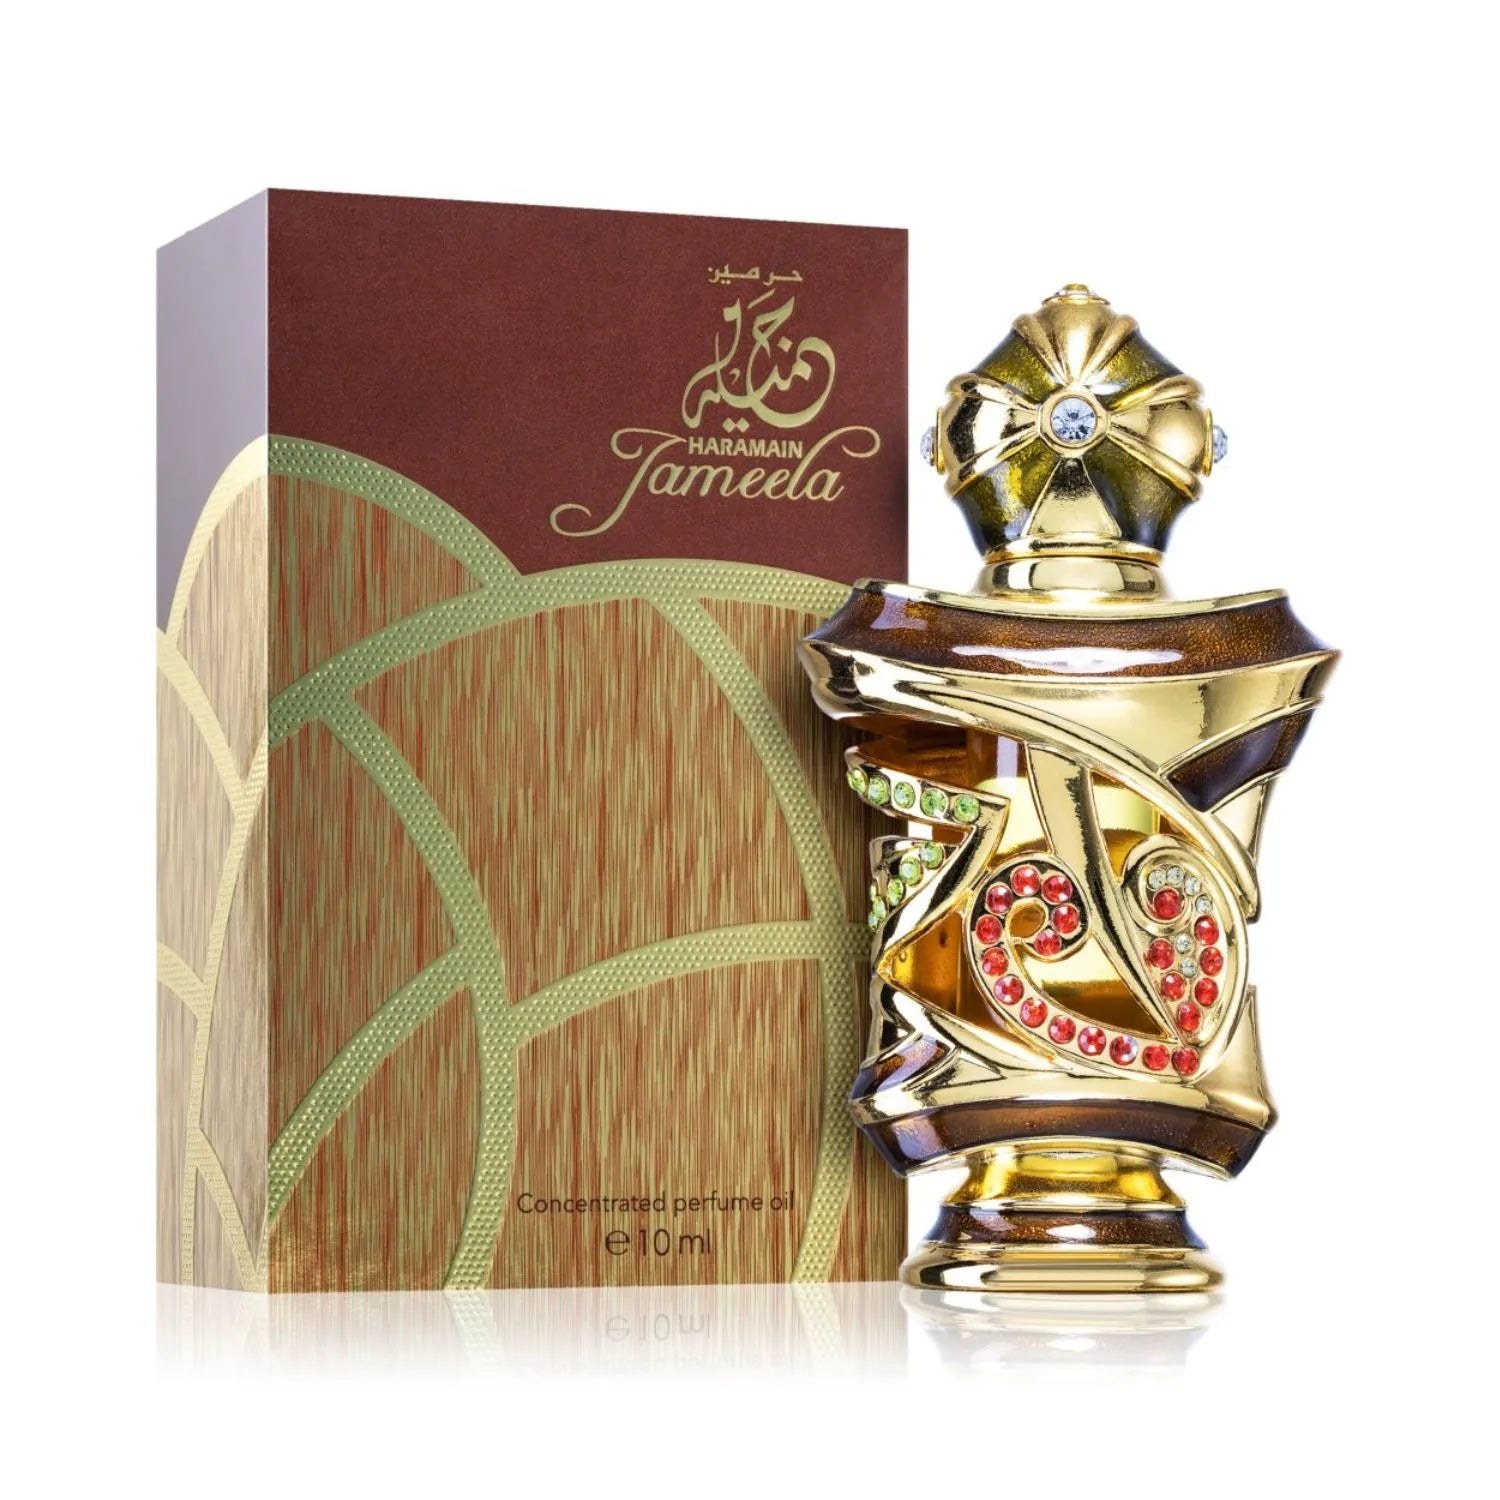 Jameela Perfume Image